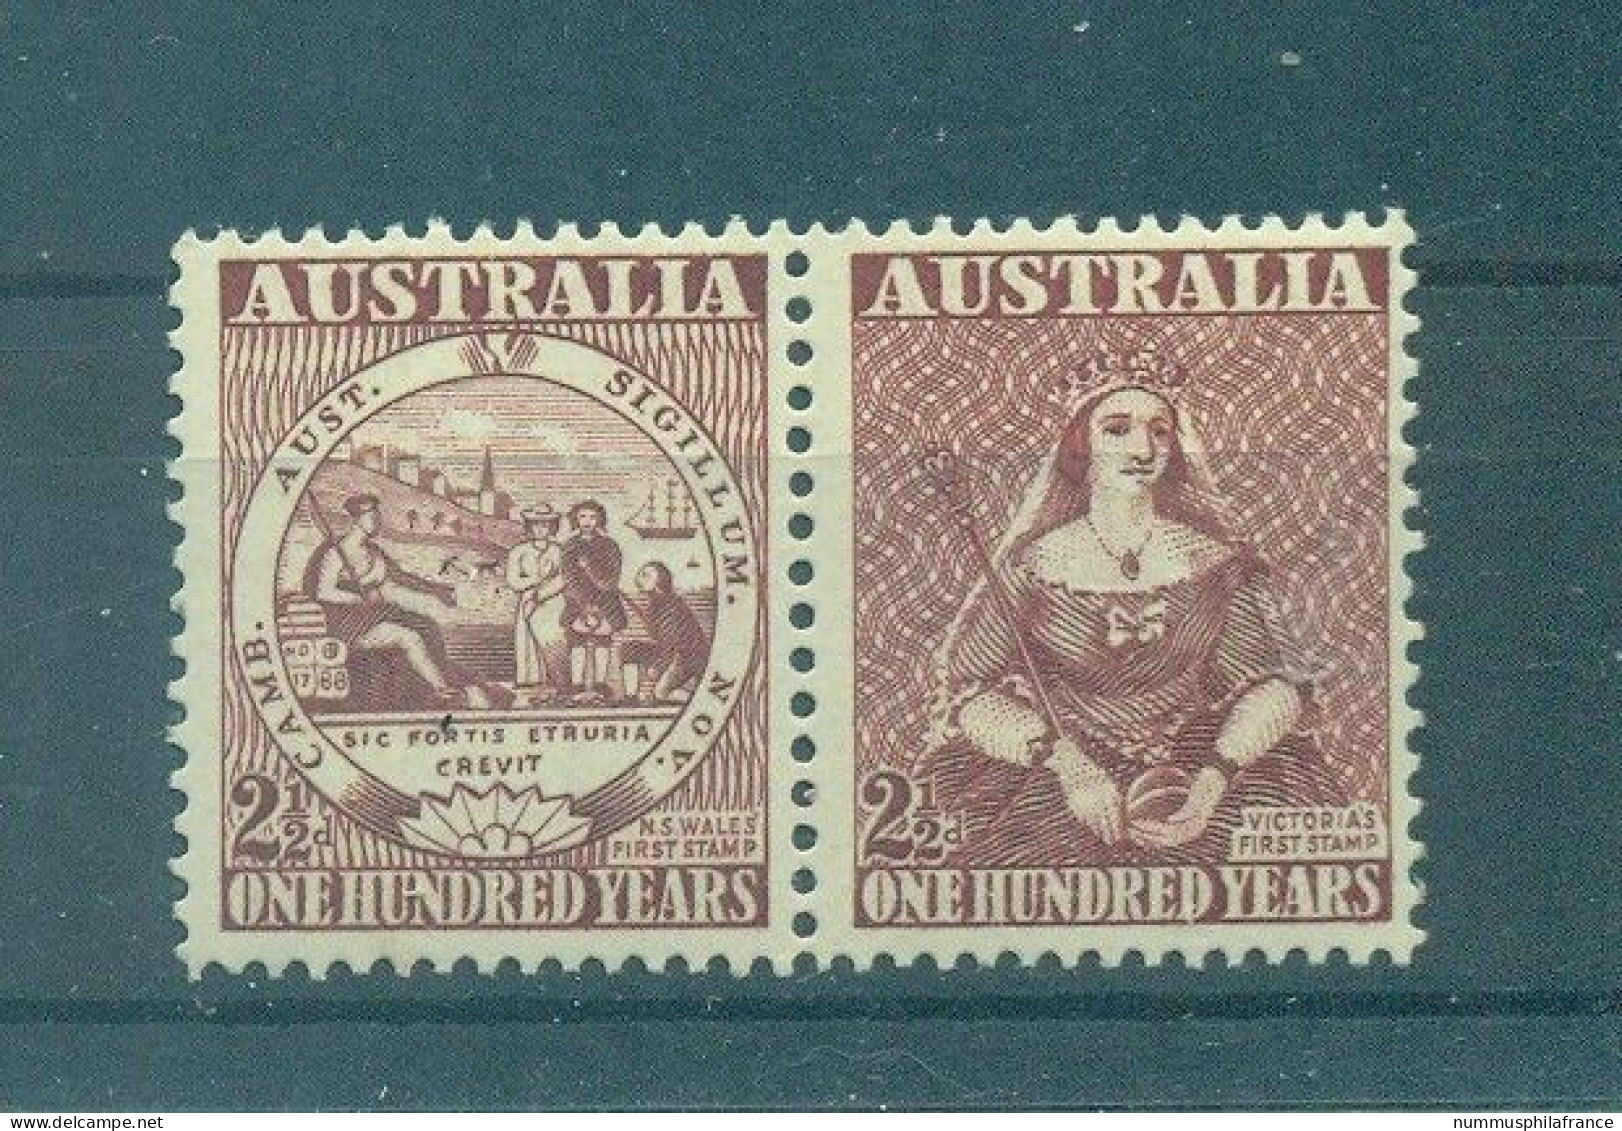 Australie 1950 - Y & T N. 175/76 - Timbre Australien (Michel N. 207/08) - Ungebraucht